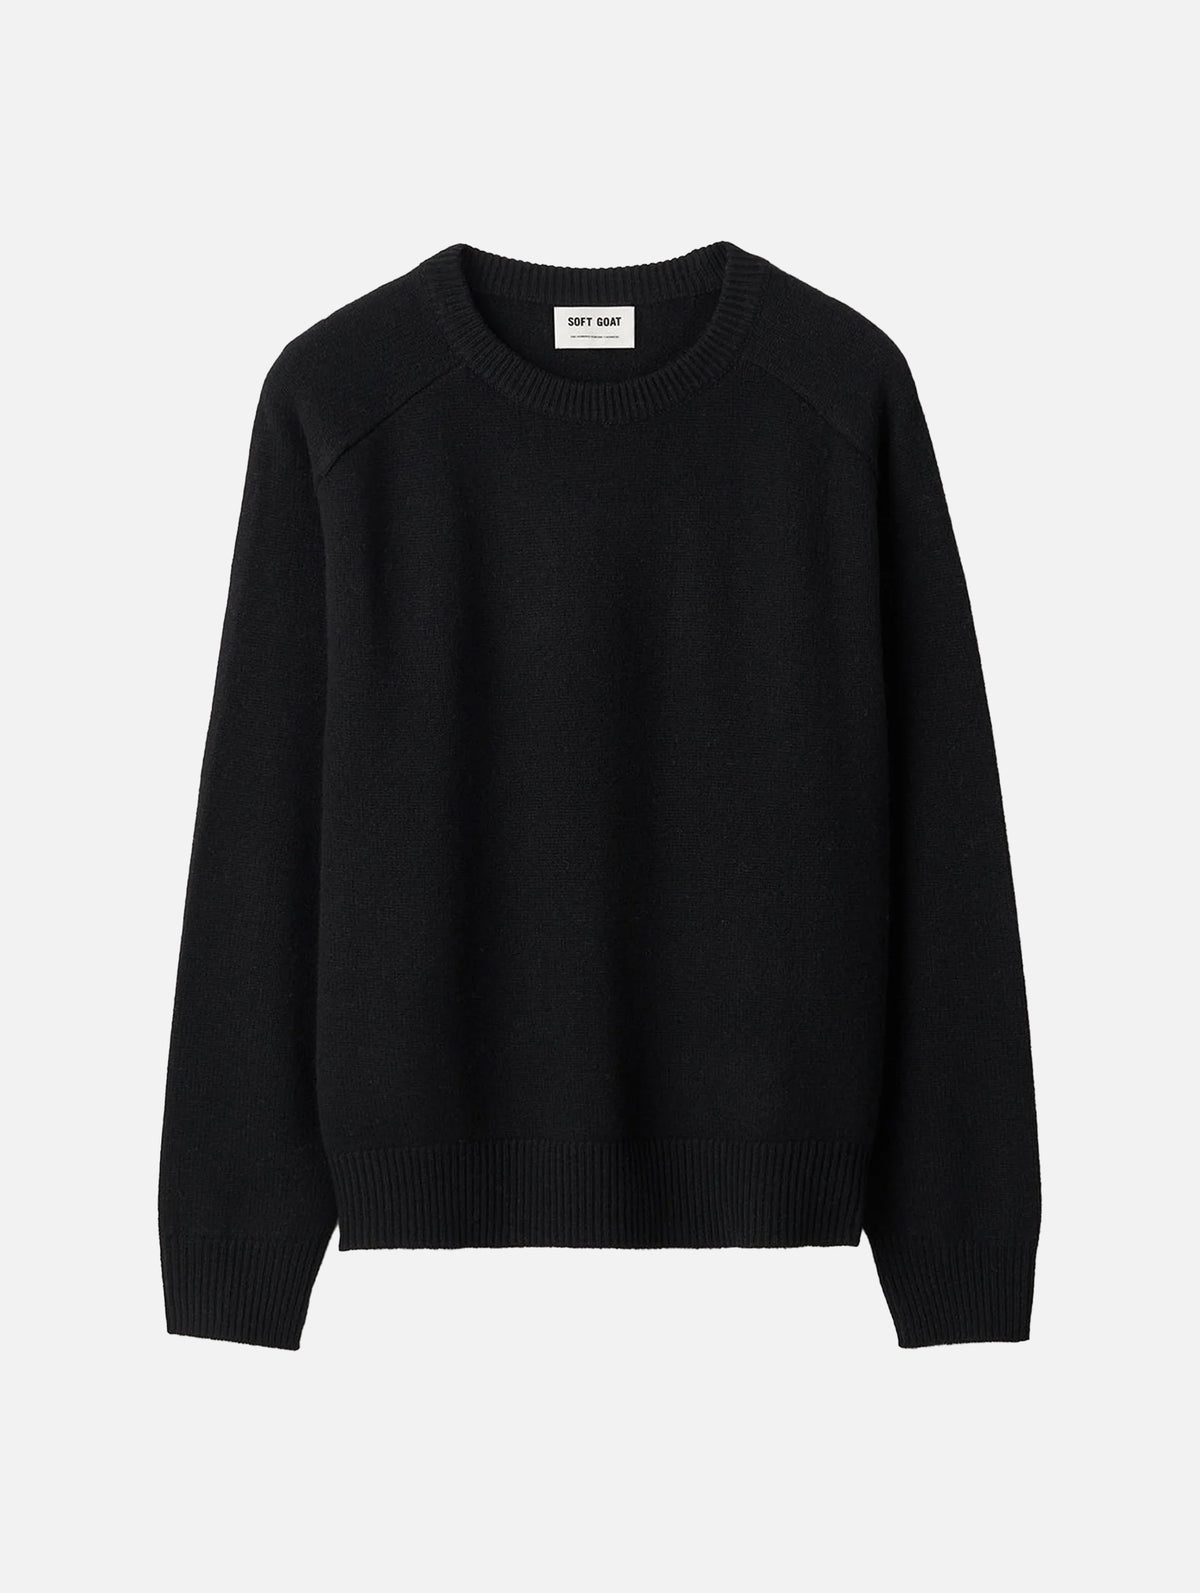 Boyfriend O-Neck Cashmere Sweater in Black